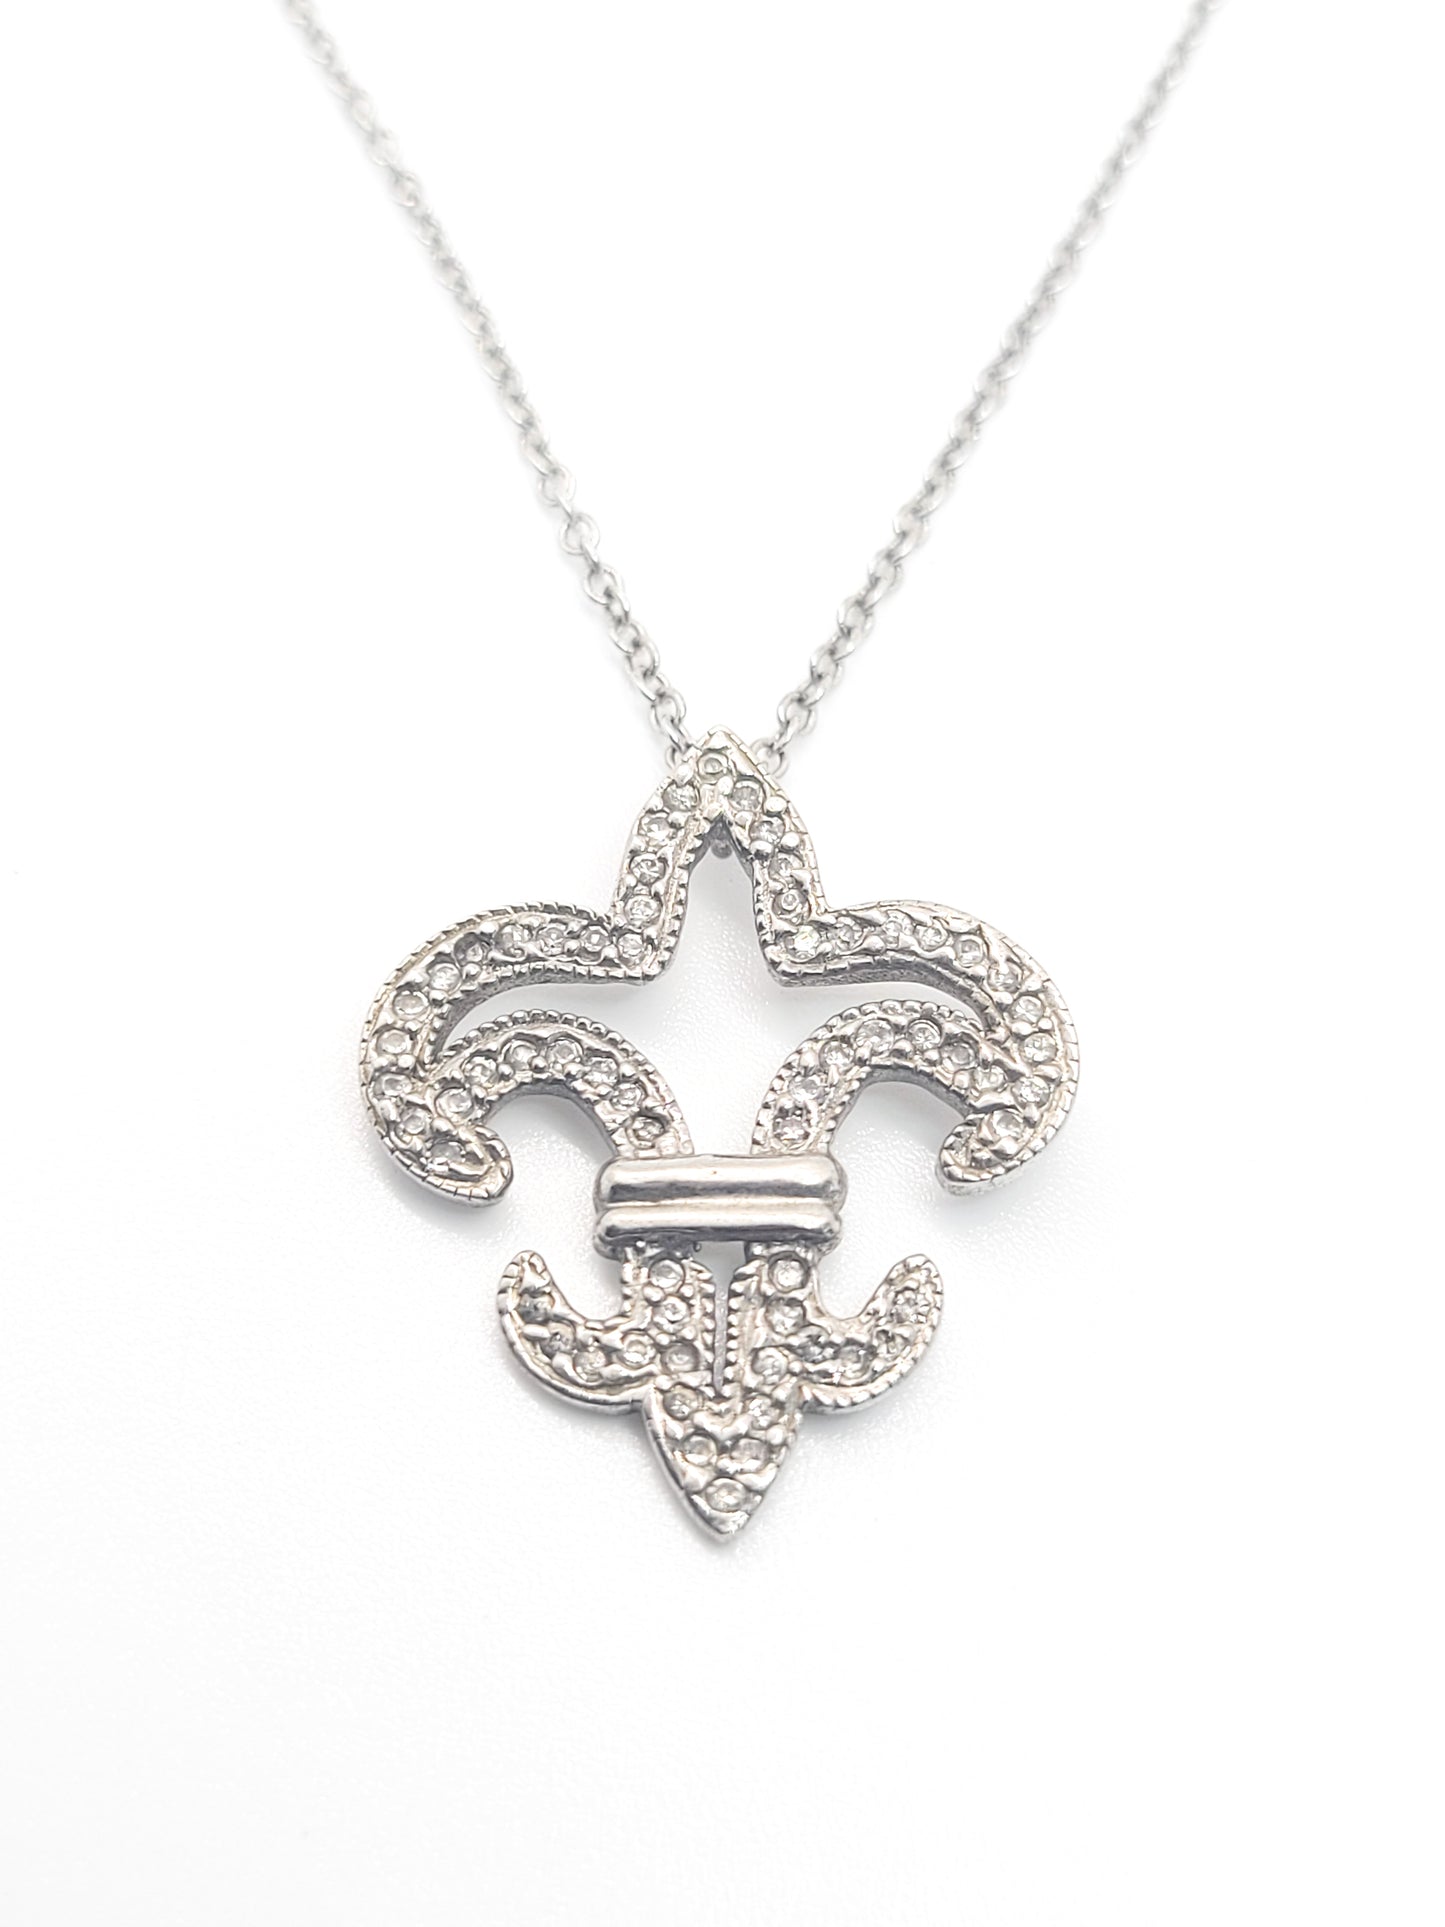 Fleur De Lis CZ cubic Zirconia sterling silver signed pendant necklace